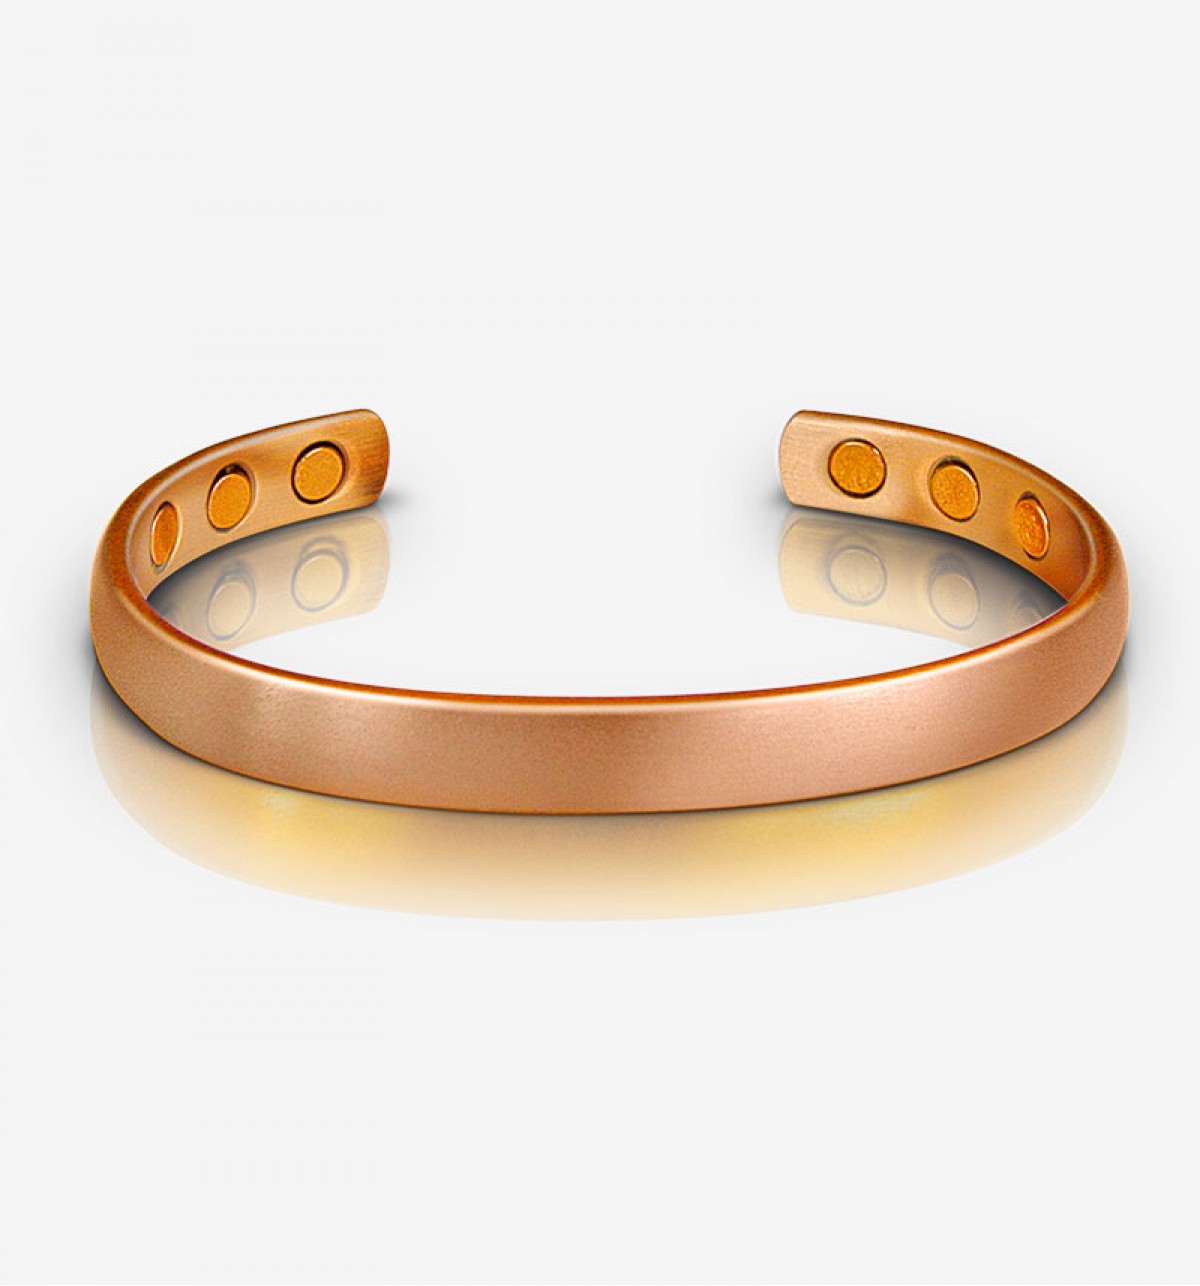 https://www.branshaws.co.uk/image/cache/catalog/magnetic-copper-bracelet-50-1200x1286.jpg